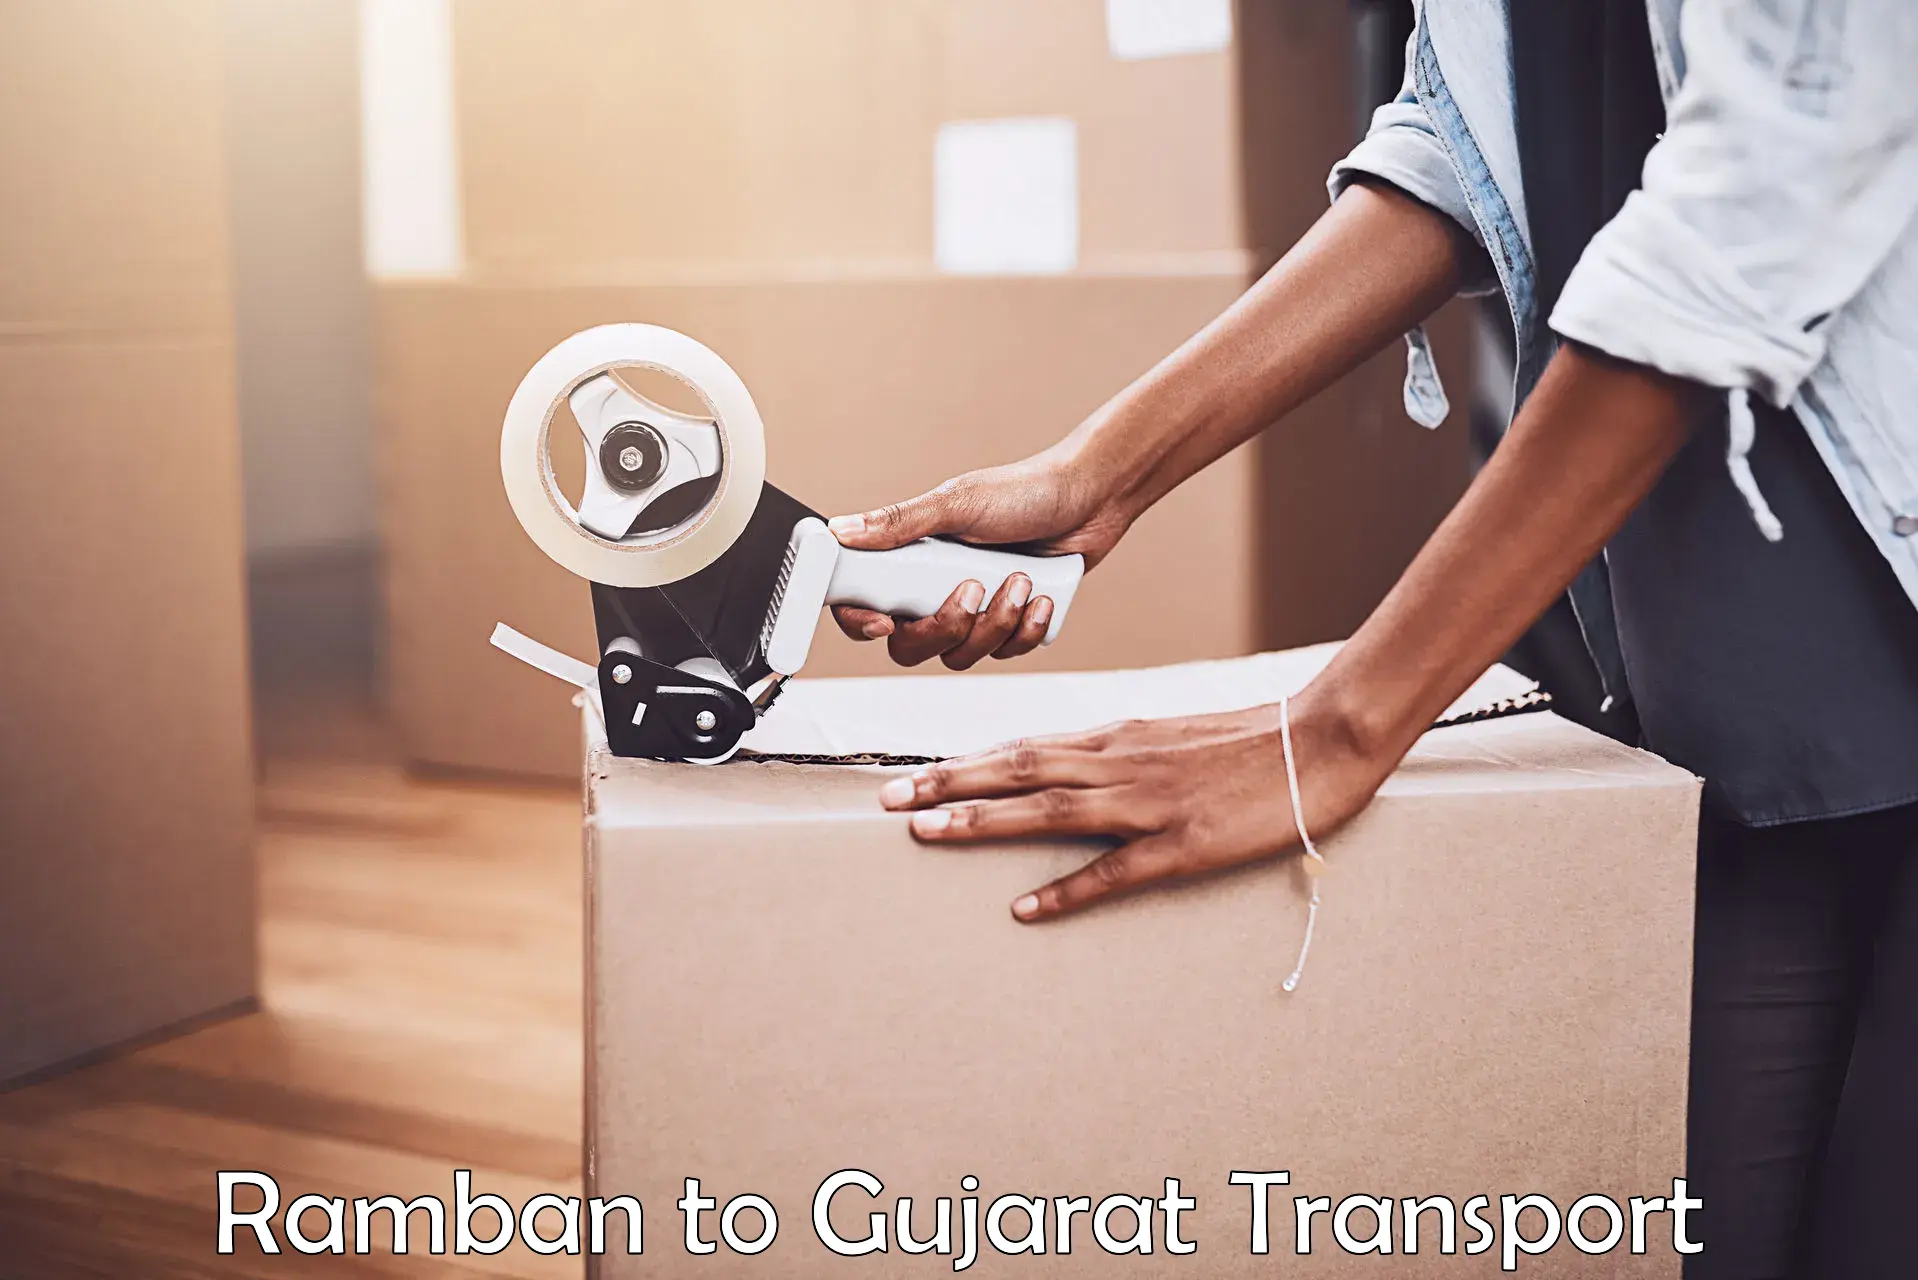 Furniture transport service in Ramban to Vadodara